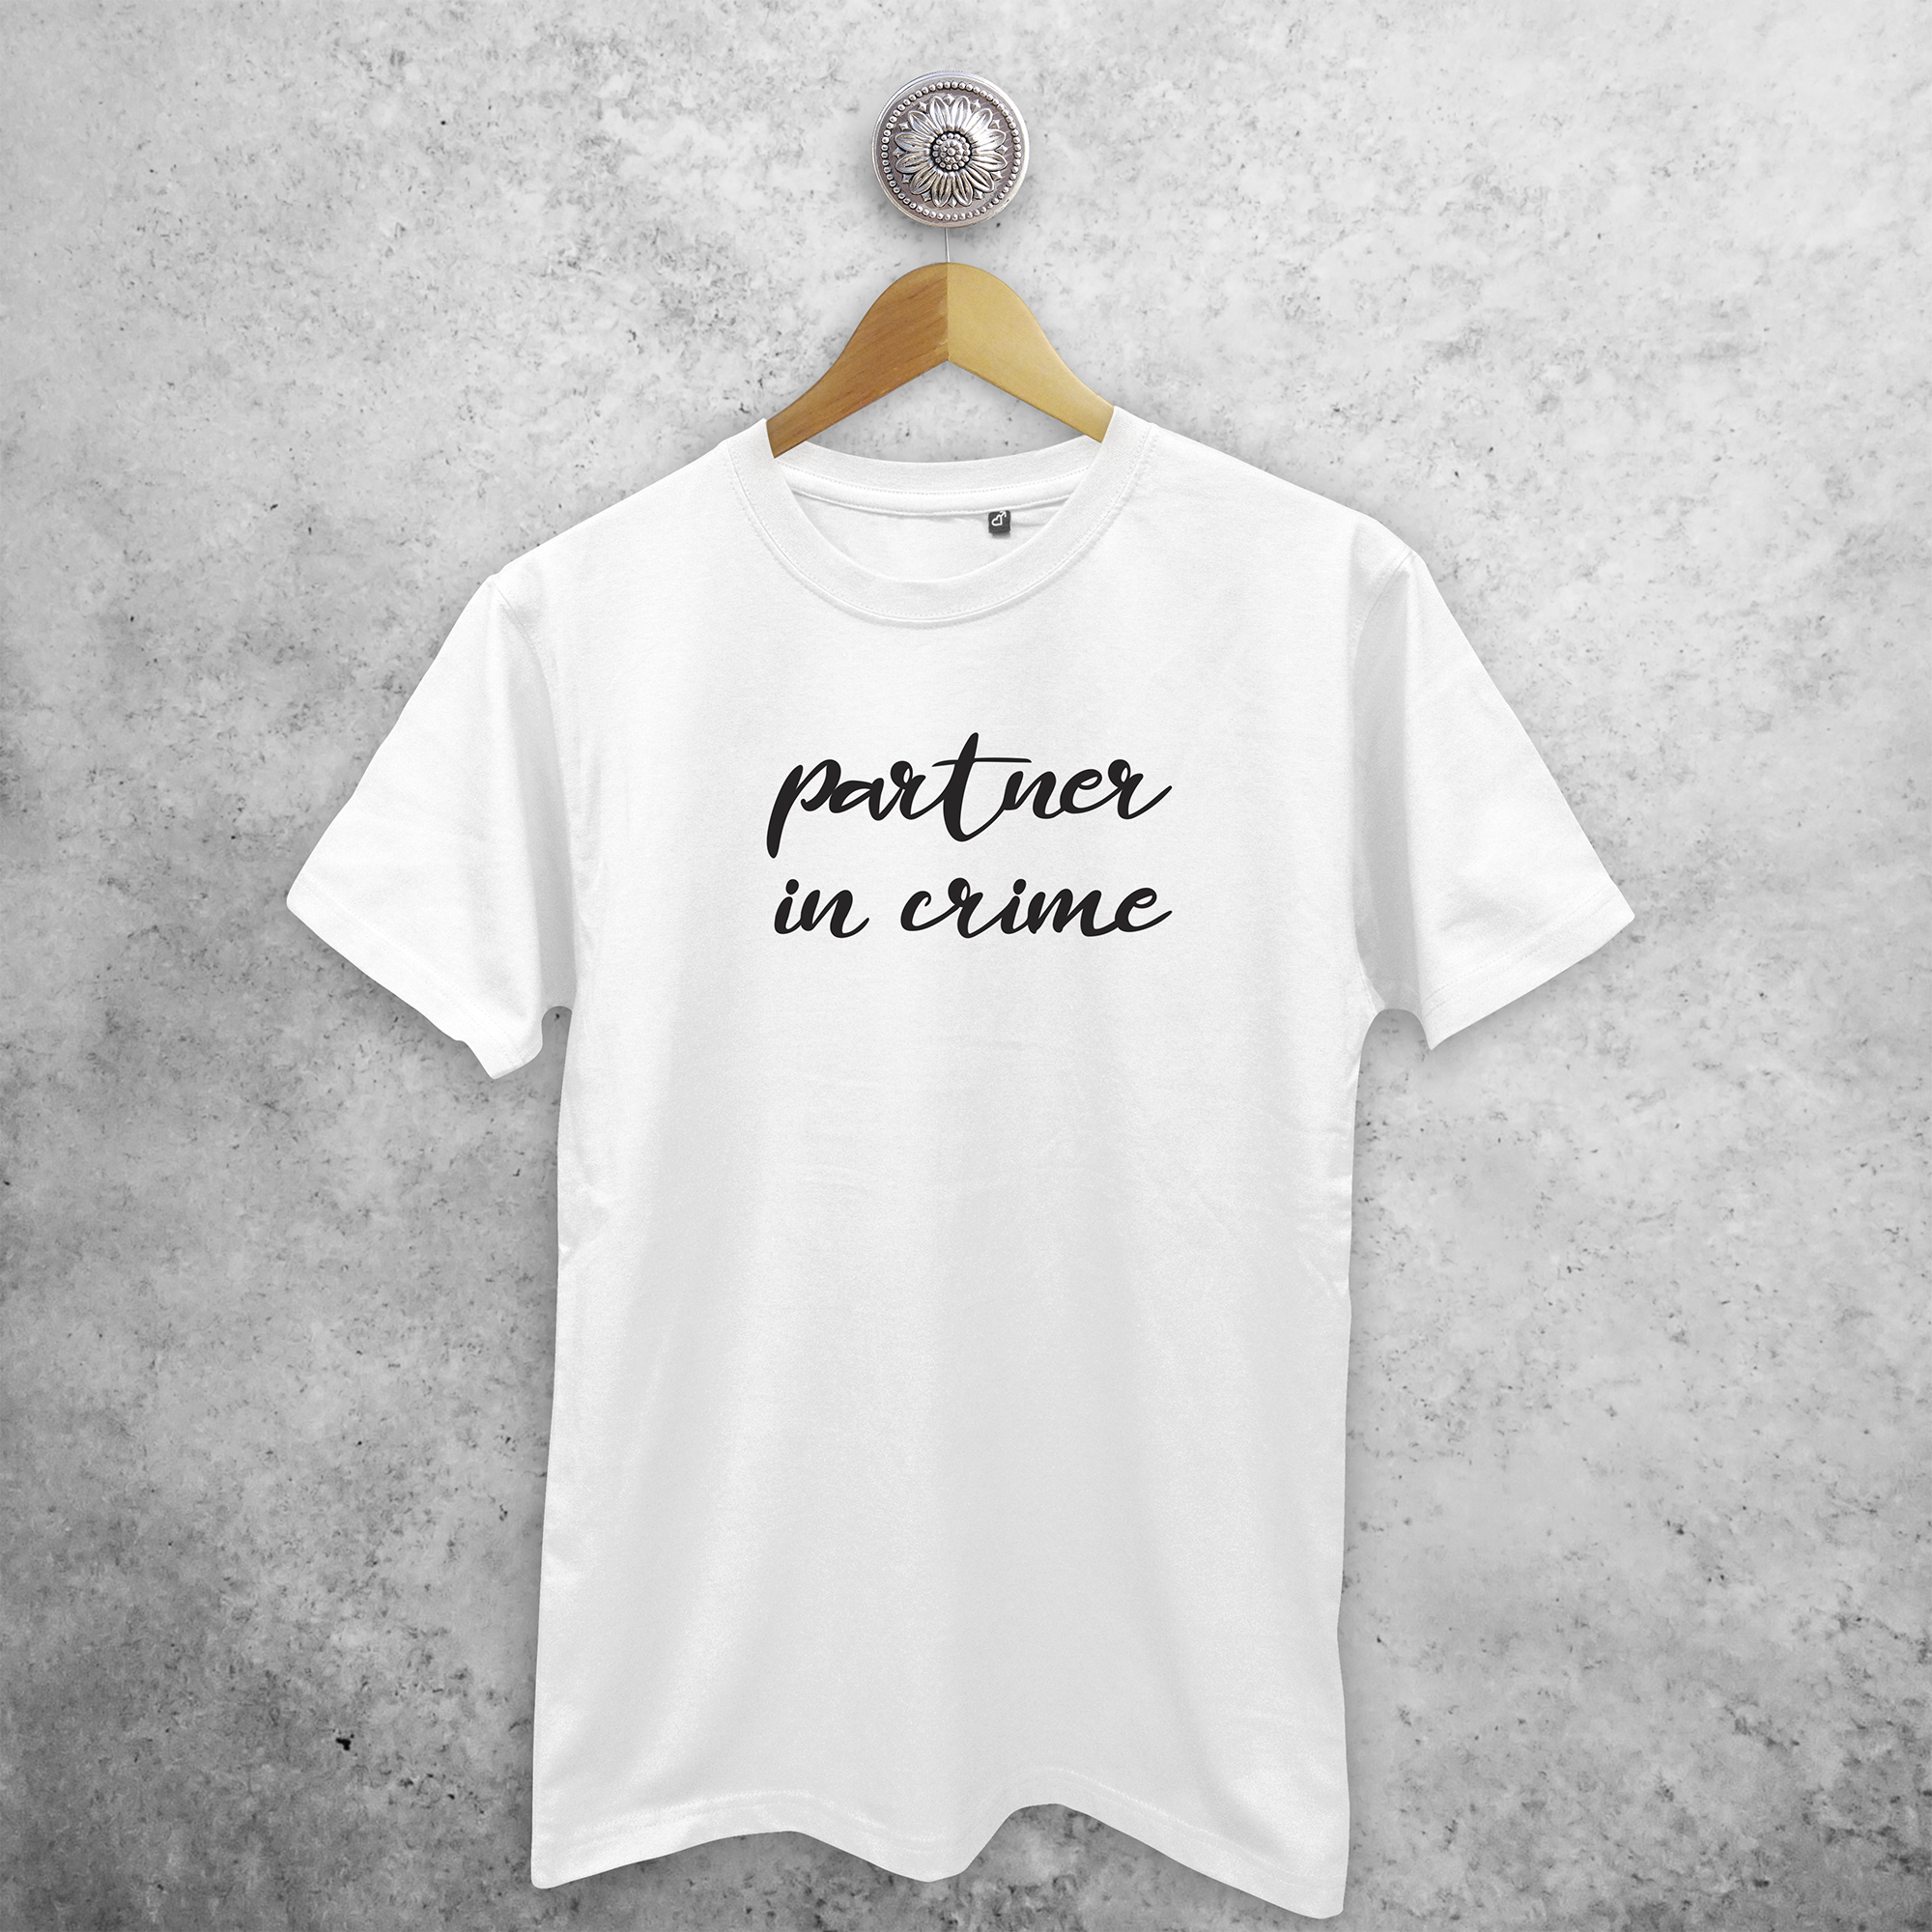 'Partner in crime' adult shirt